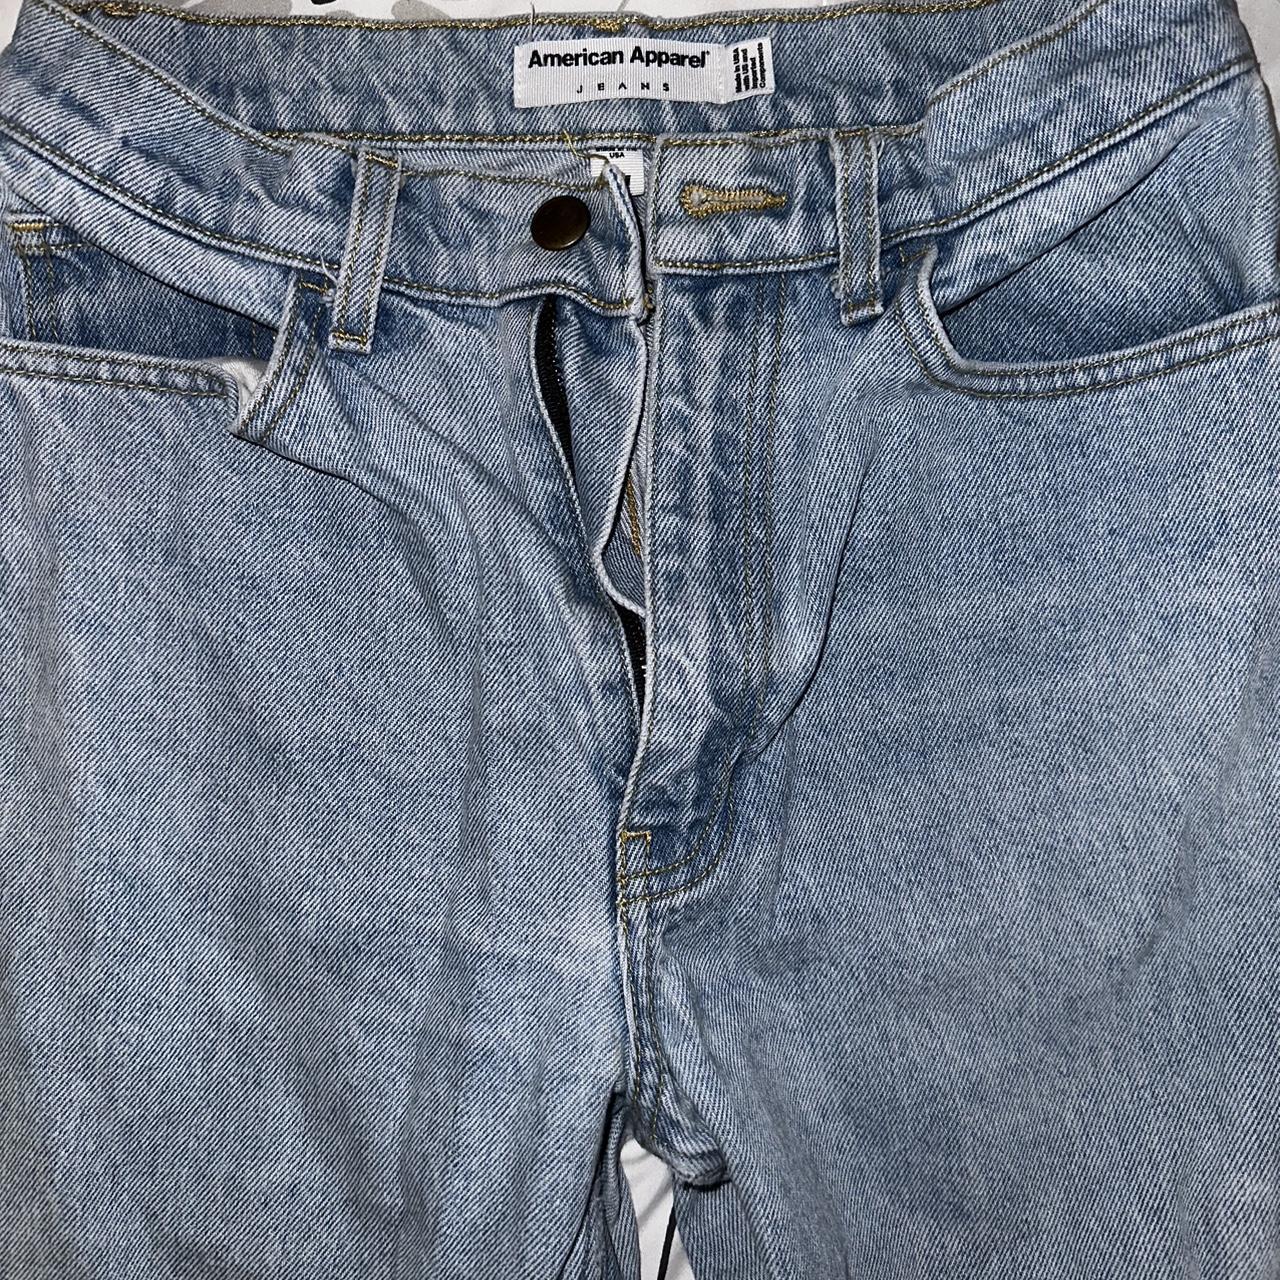 American Apparel Women's Jeans (2)